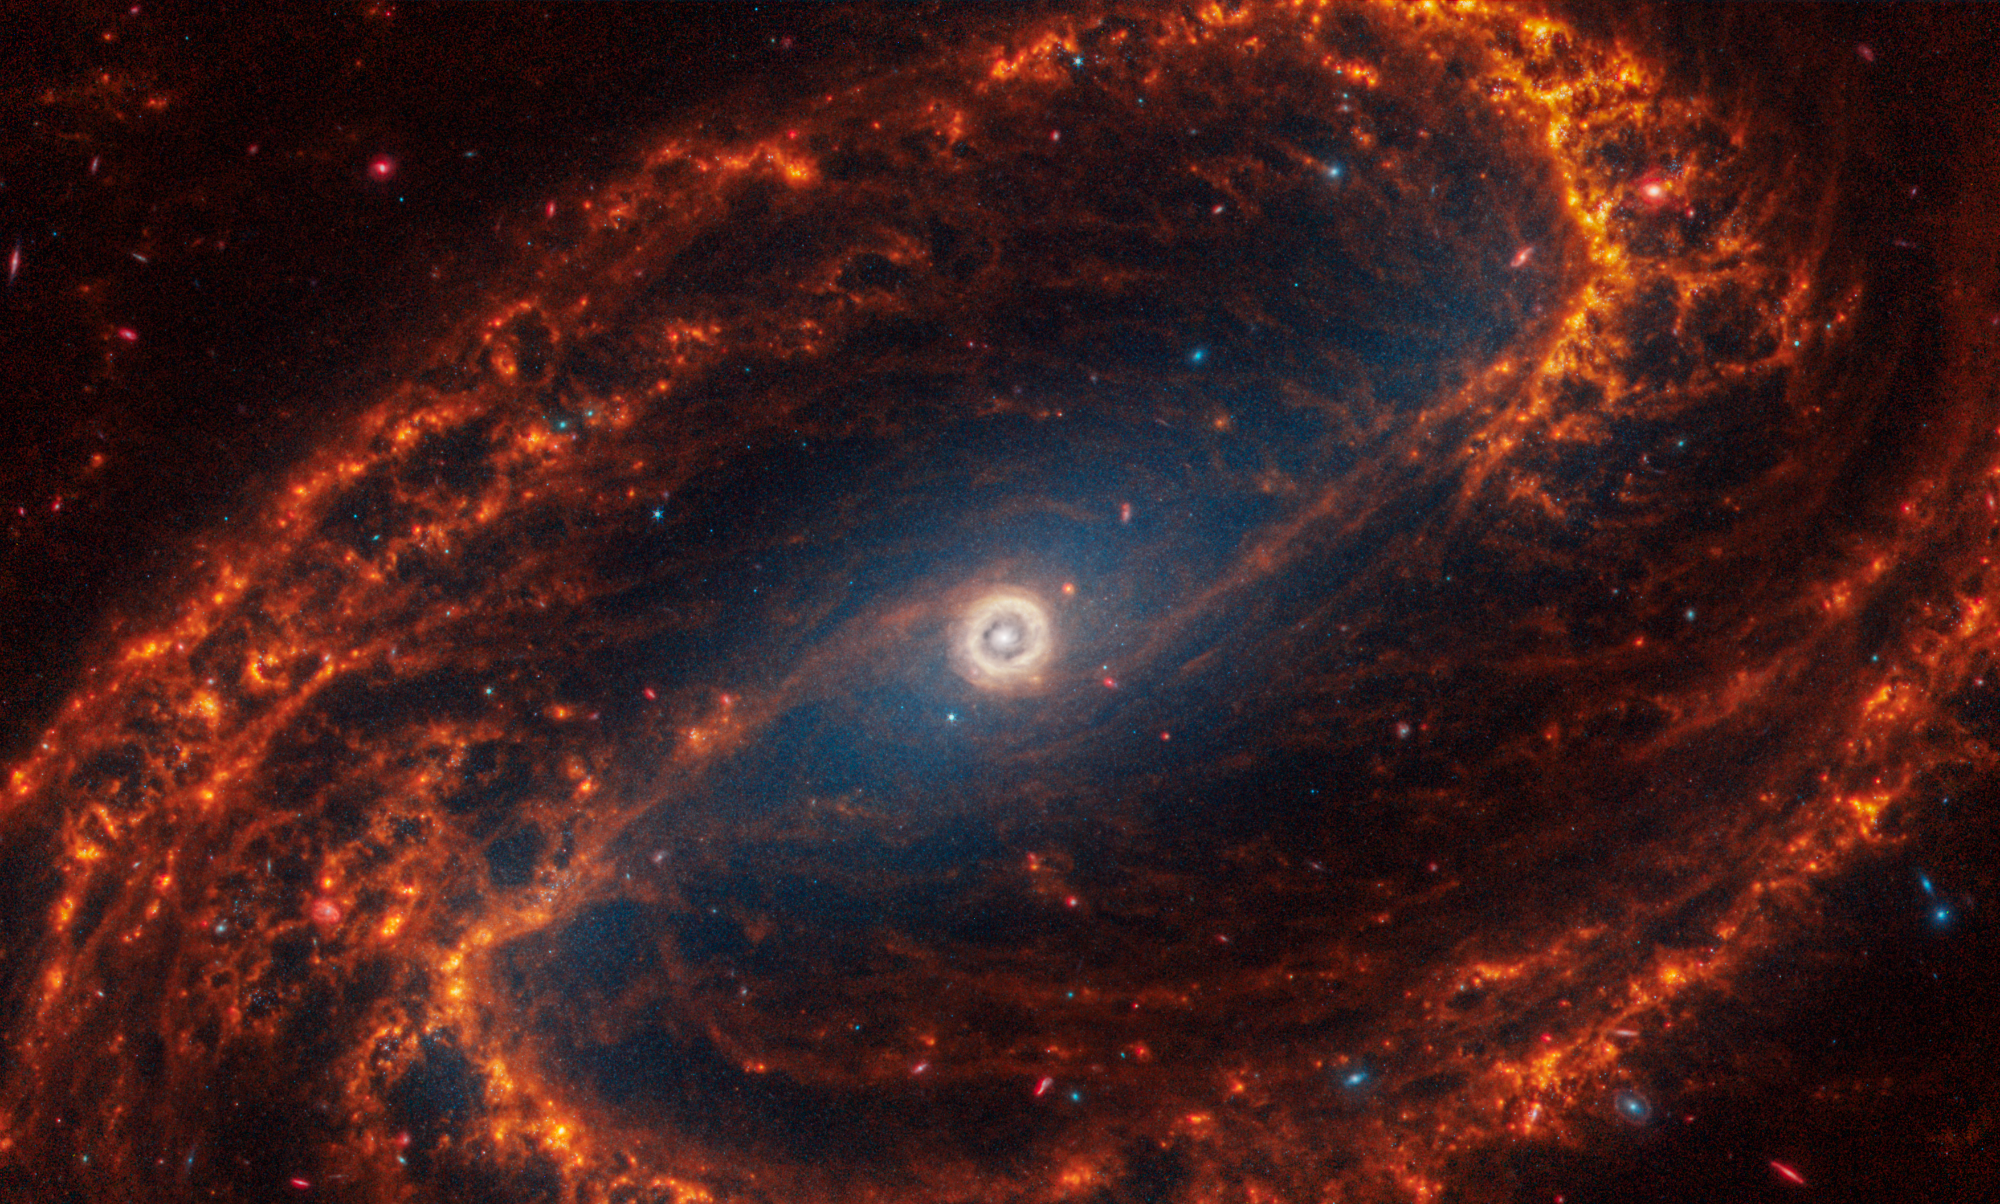 La galaxia espiral NGC 1300, situada a 69 millones de años luz en la constelación de Erídano, destacando su estructura majestuosa y los intrincados patrones de sus brazos espirales.